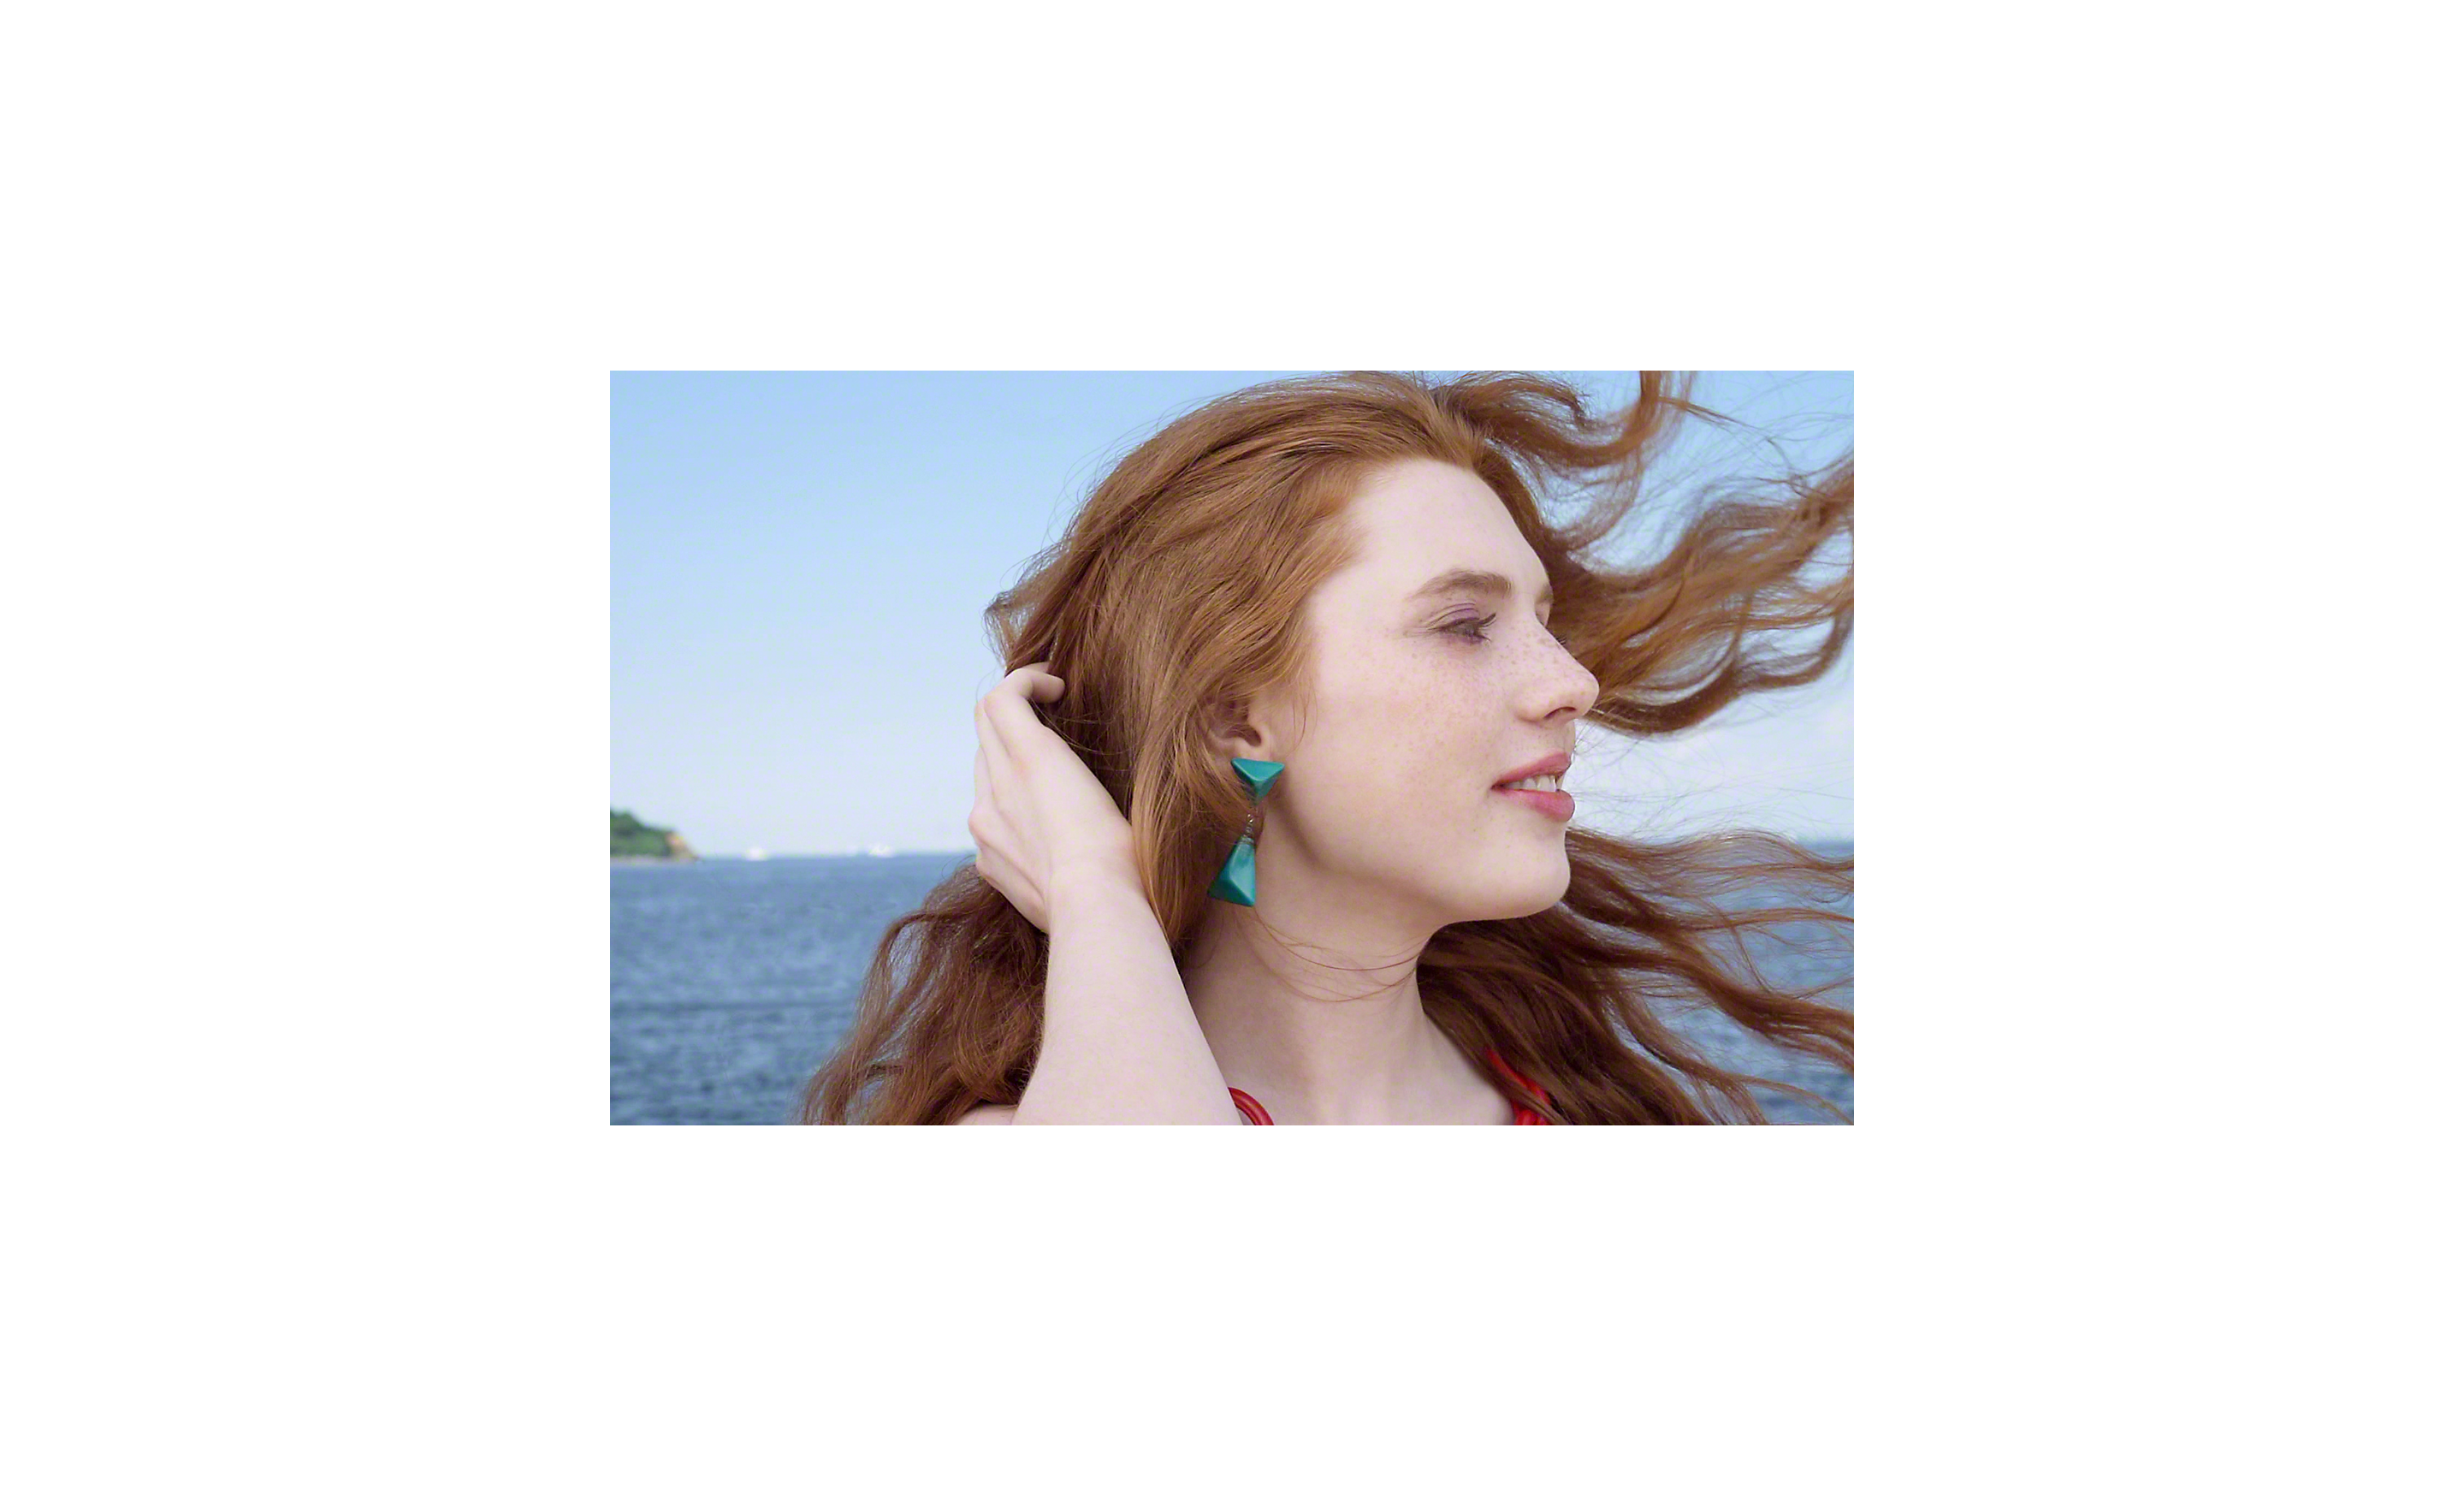 Nahaufnahme einer Frau, das Haar weht im Wind, das Meer im Hintergrund